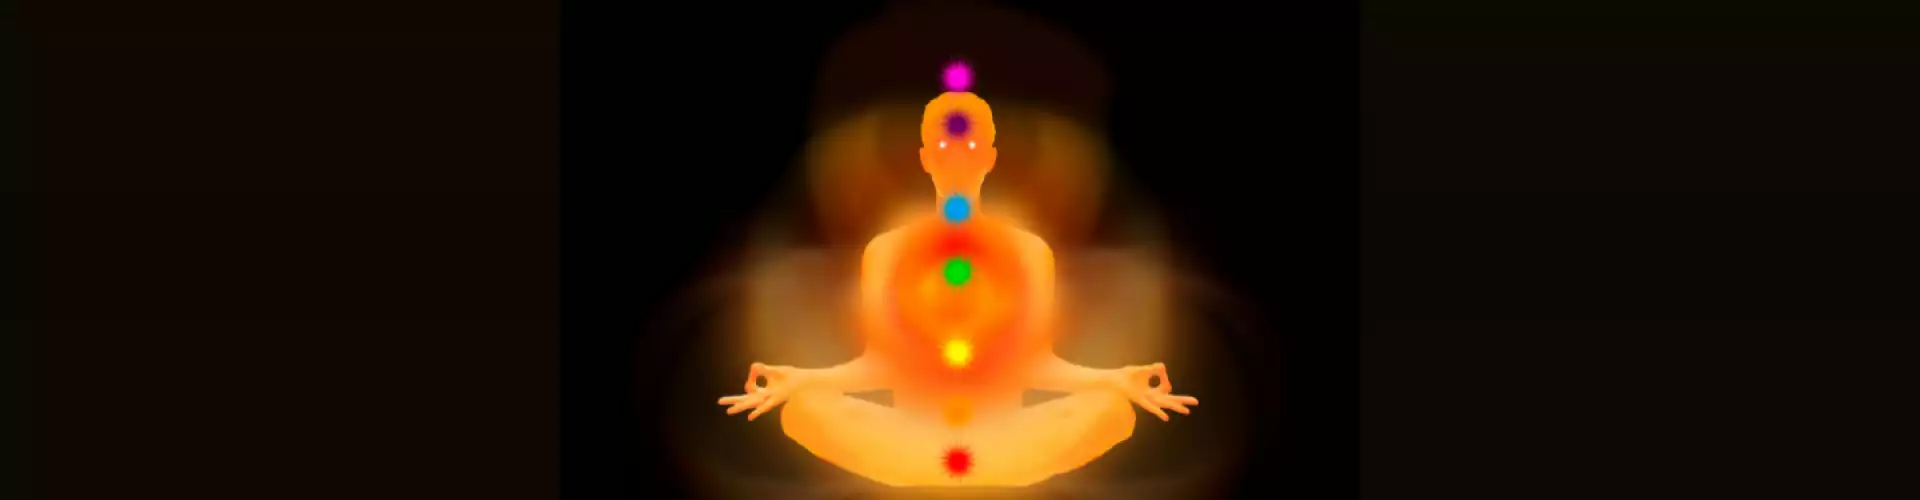 瑜伽 Prānāyāma 打開你的眉心輪